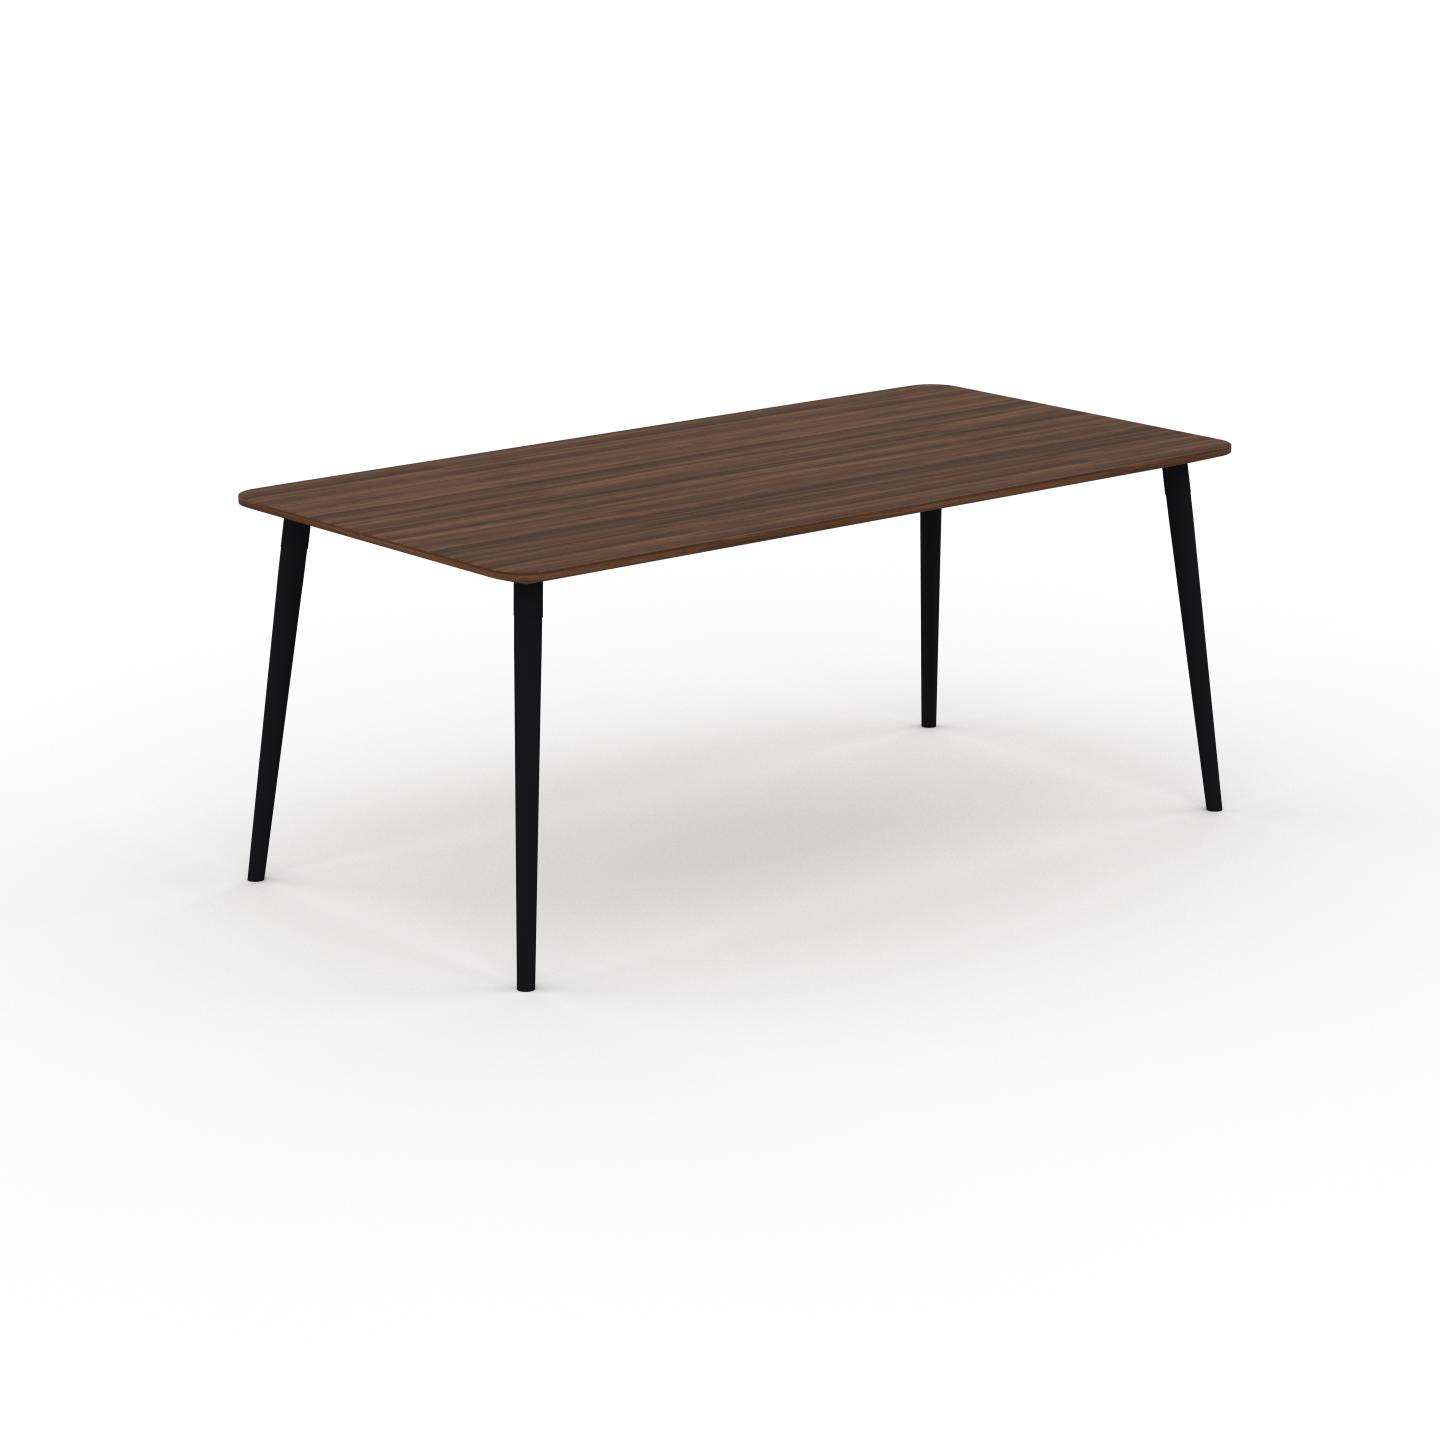 MYCS Table à manger - Noyer, design scandinave, pour salle à manger ou cuisine nordique - 180 x 75 x 90 cm, personnalisable